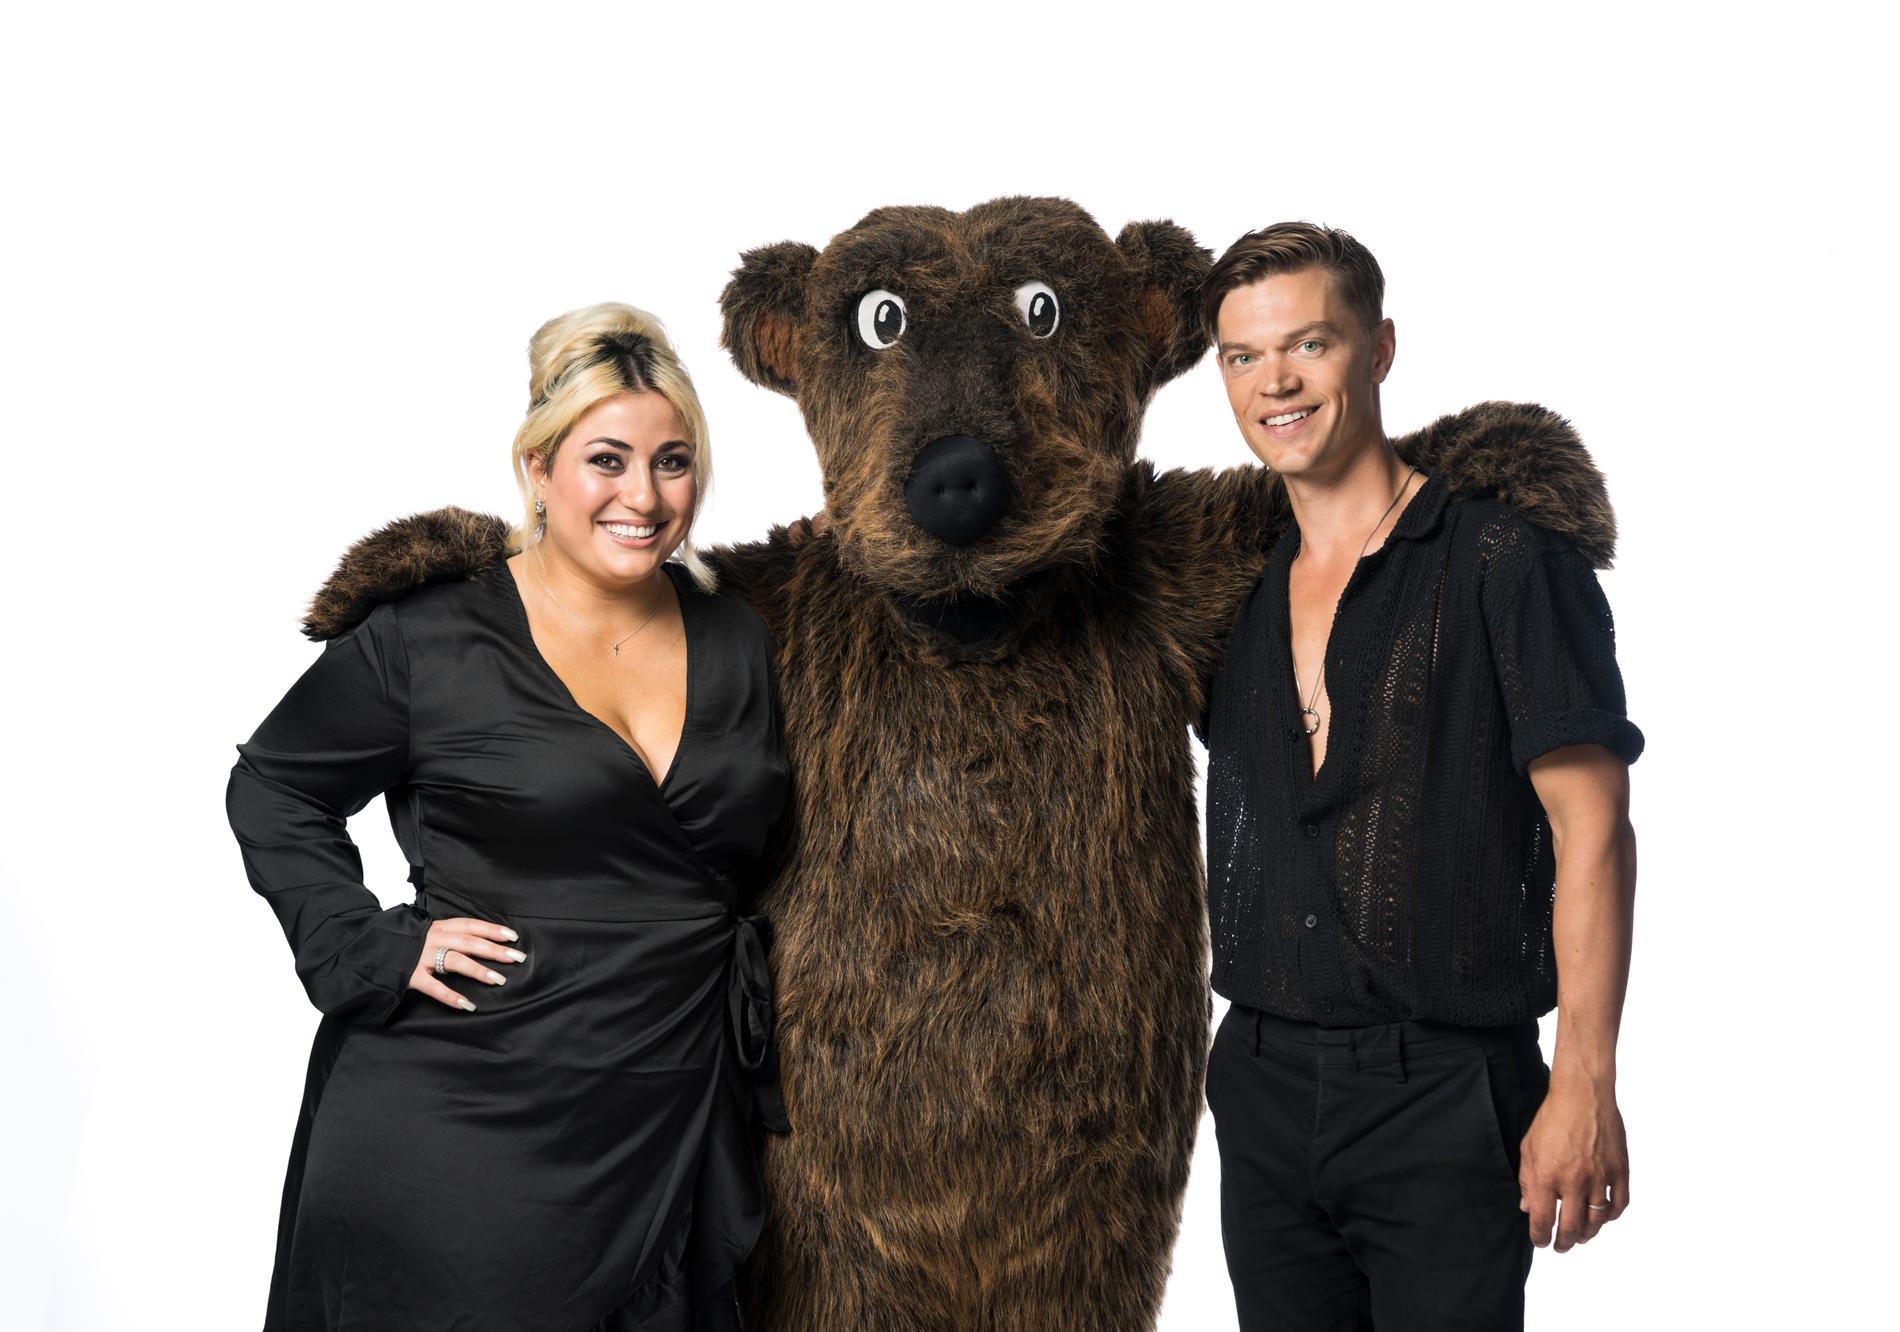 Rockbjörnens programledare Viktor Norén och Natalie Demirian tillsammans med björnen. 